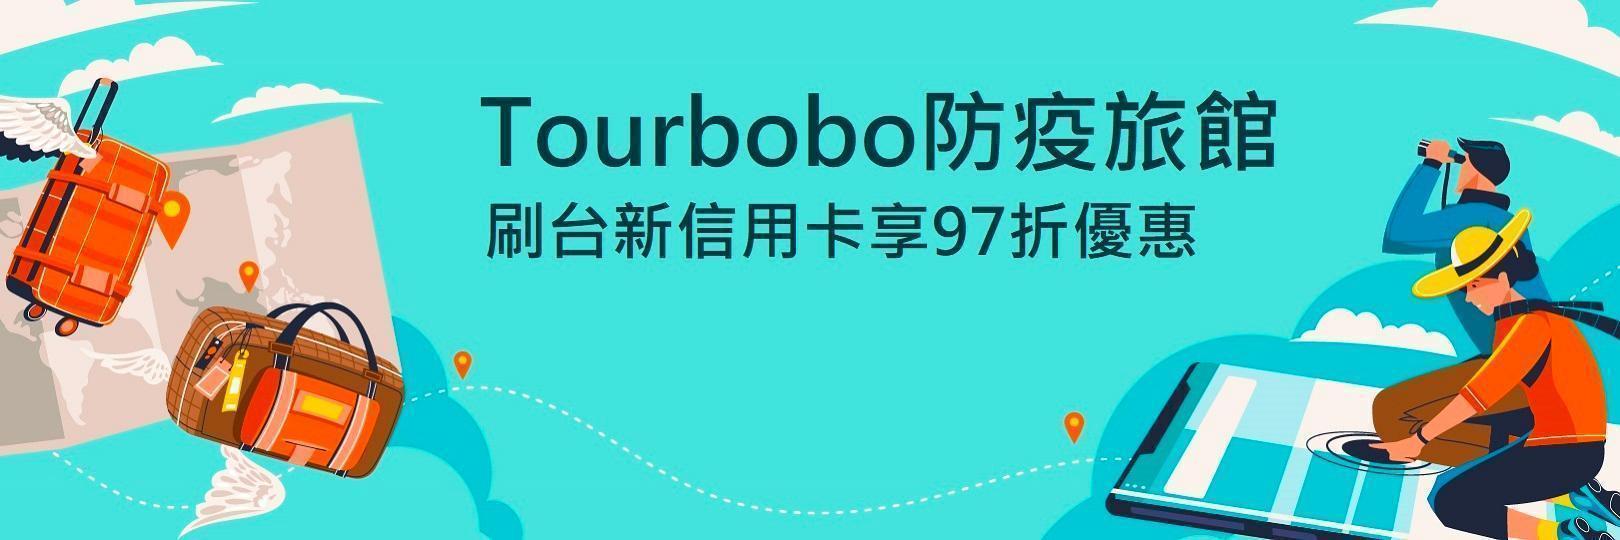 Tourbobo預訂飯店 刷台新信用卡享97折優惠